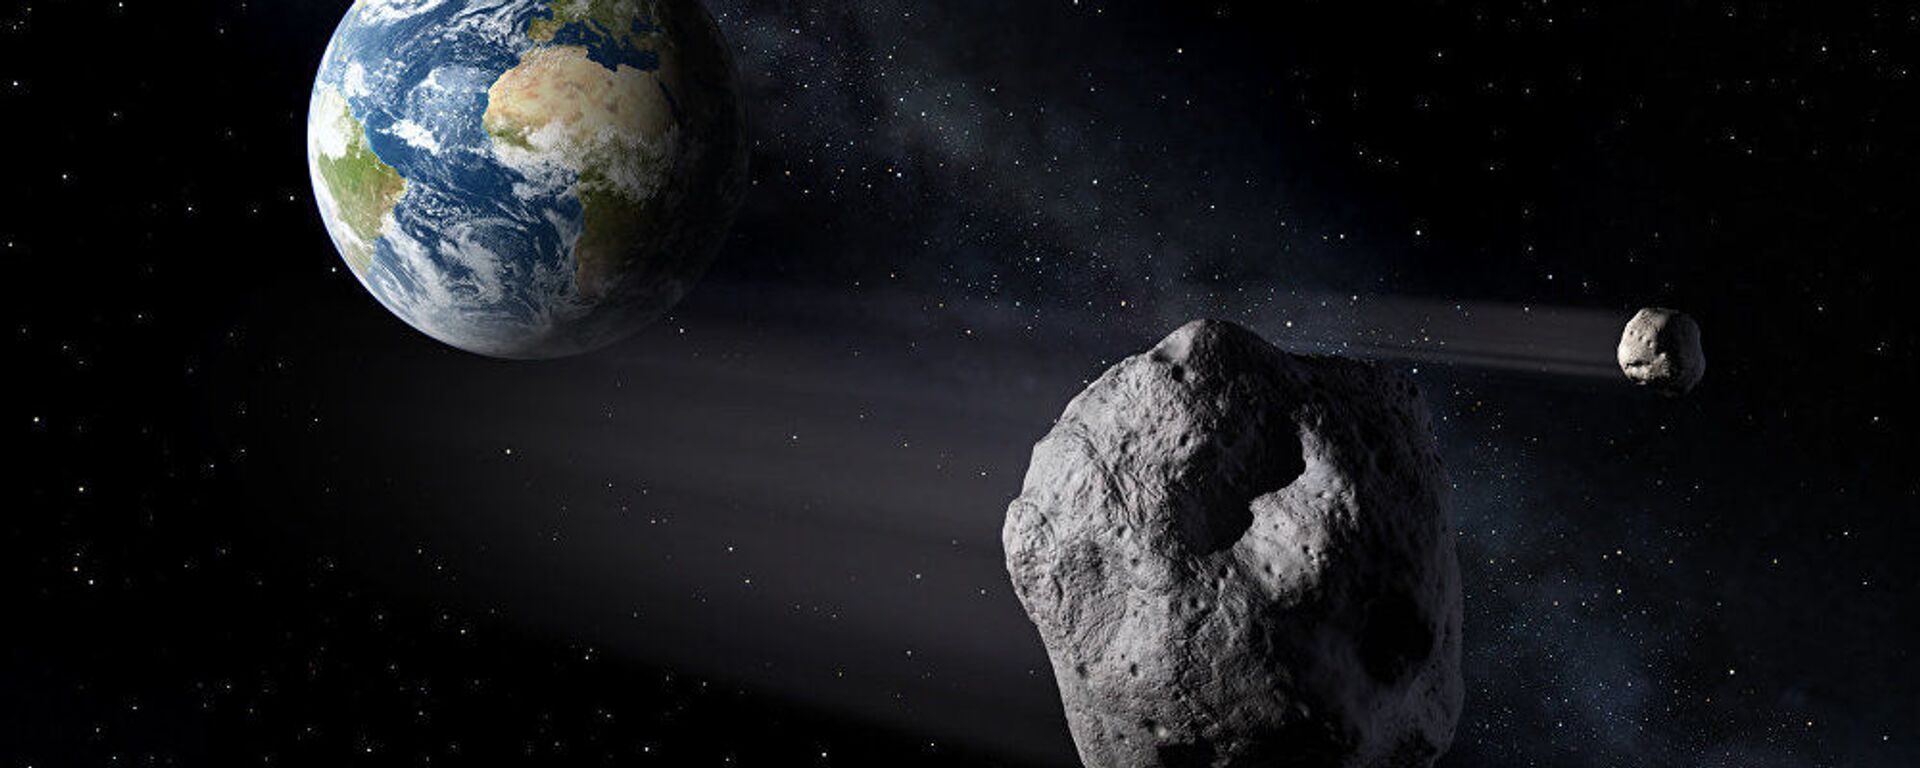 Астероид в космосе на фоне земли. Иллюстративное фото - Sputnik Ўзбекистон, 1920, 11.01.2021